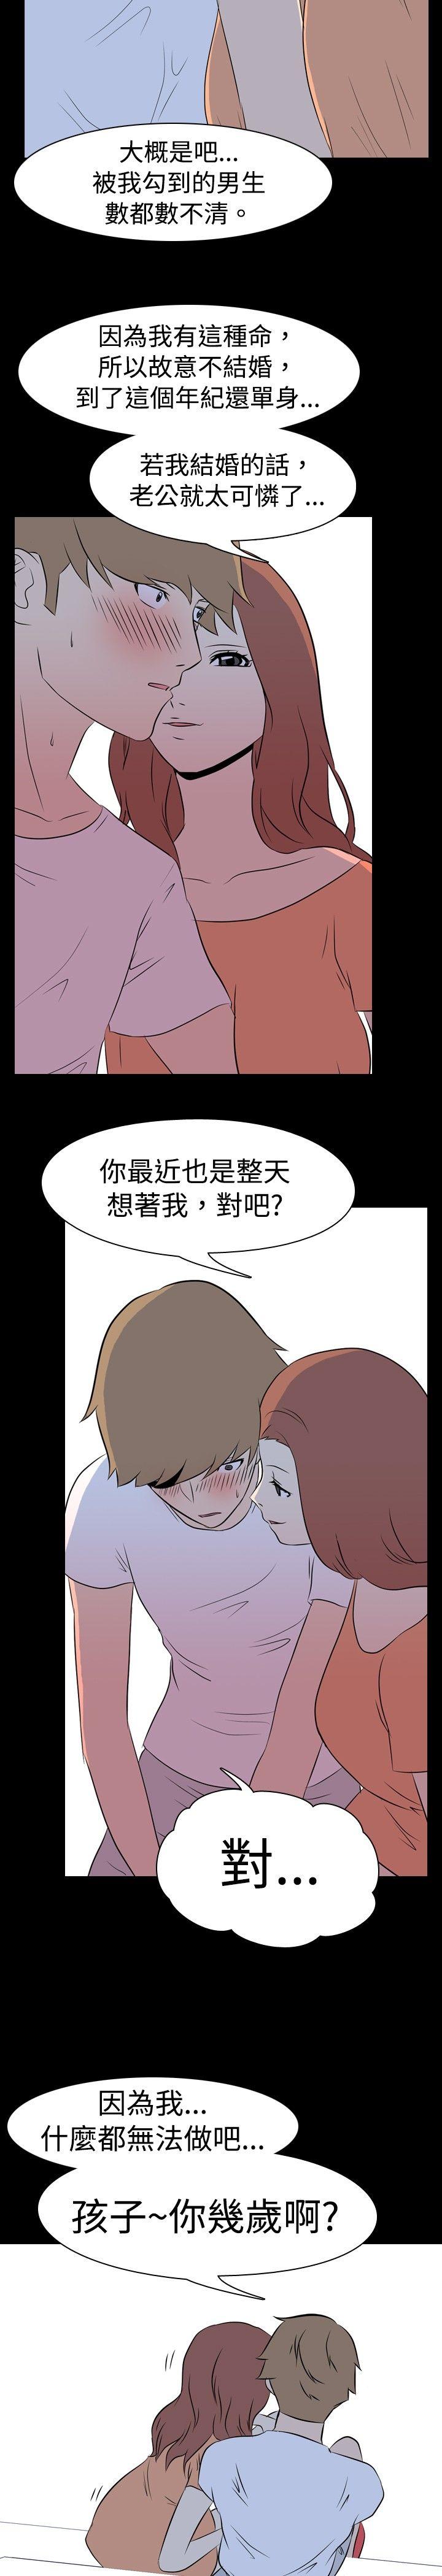 韩国污漫画 我的色色夜說 第9话-挡不住的桃花煞(中) 11